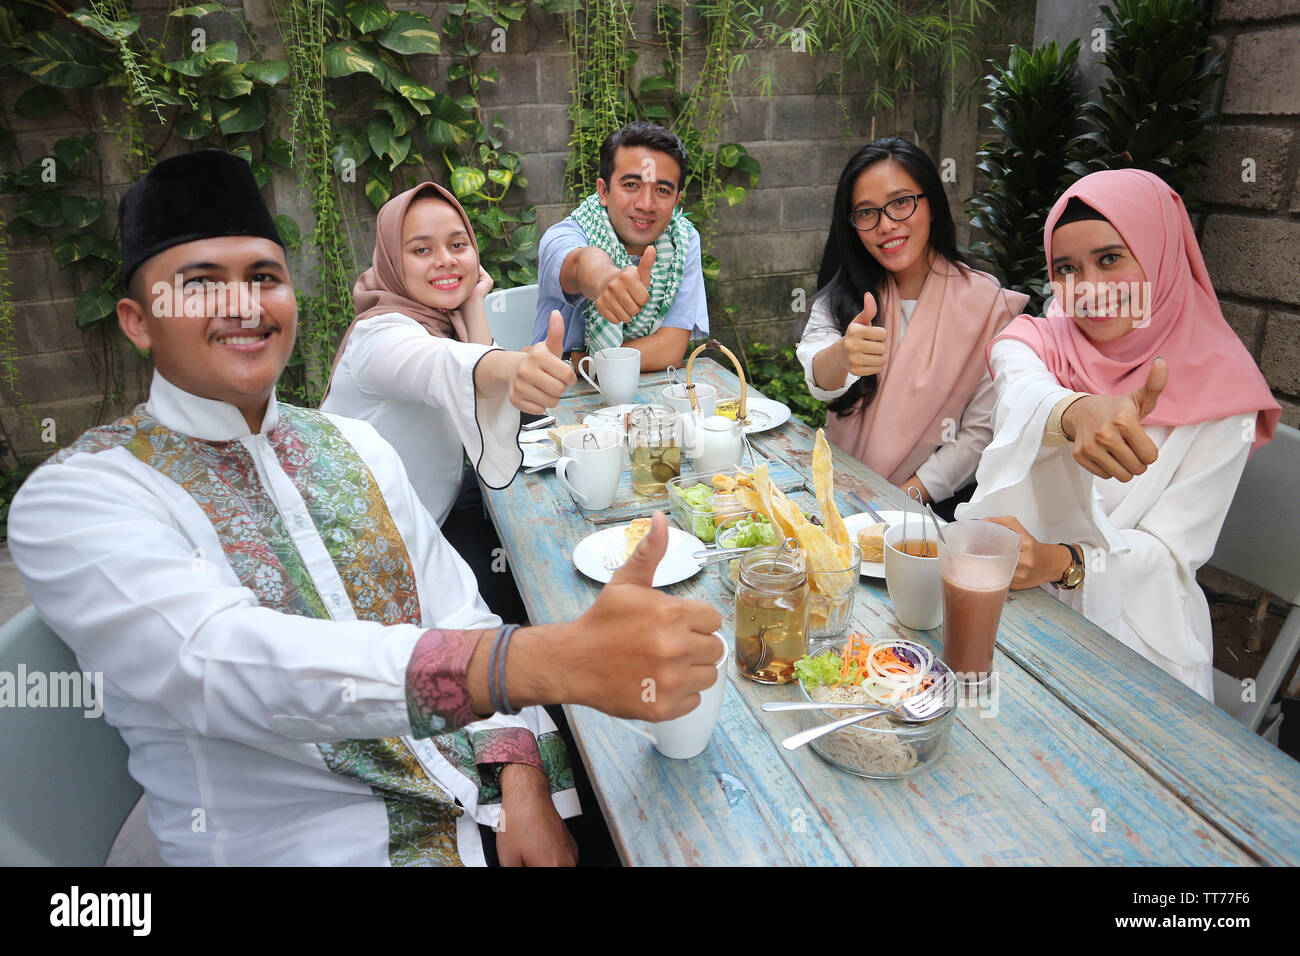 Gruppe der glückliche junge muslimische Abendessen im Freien givung Daumen bis zu Kamera während des Ramadan feiern, brechen das Fasten Stockfoto